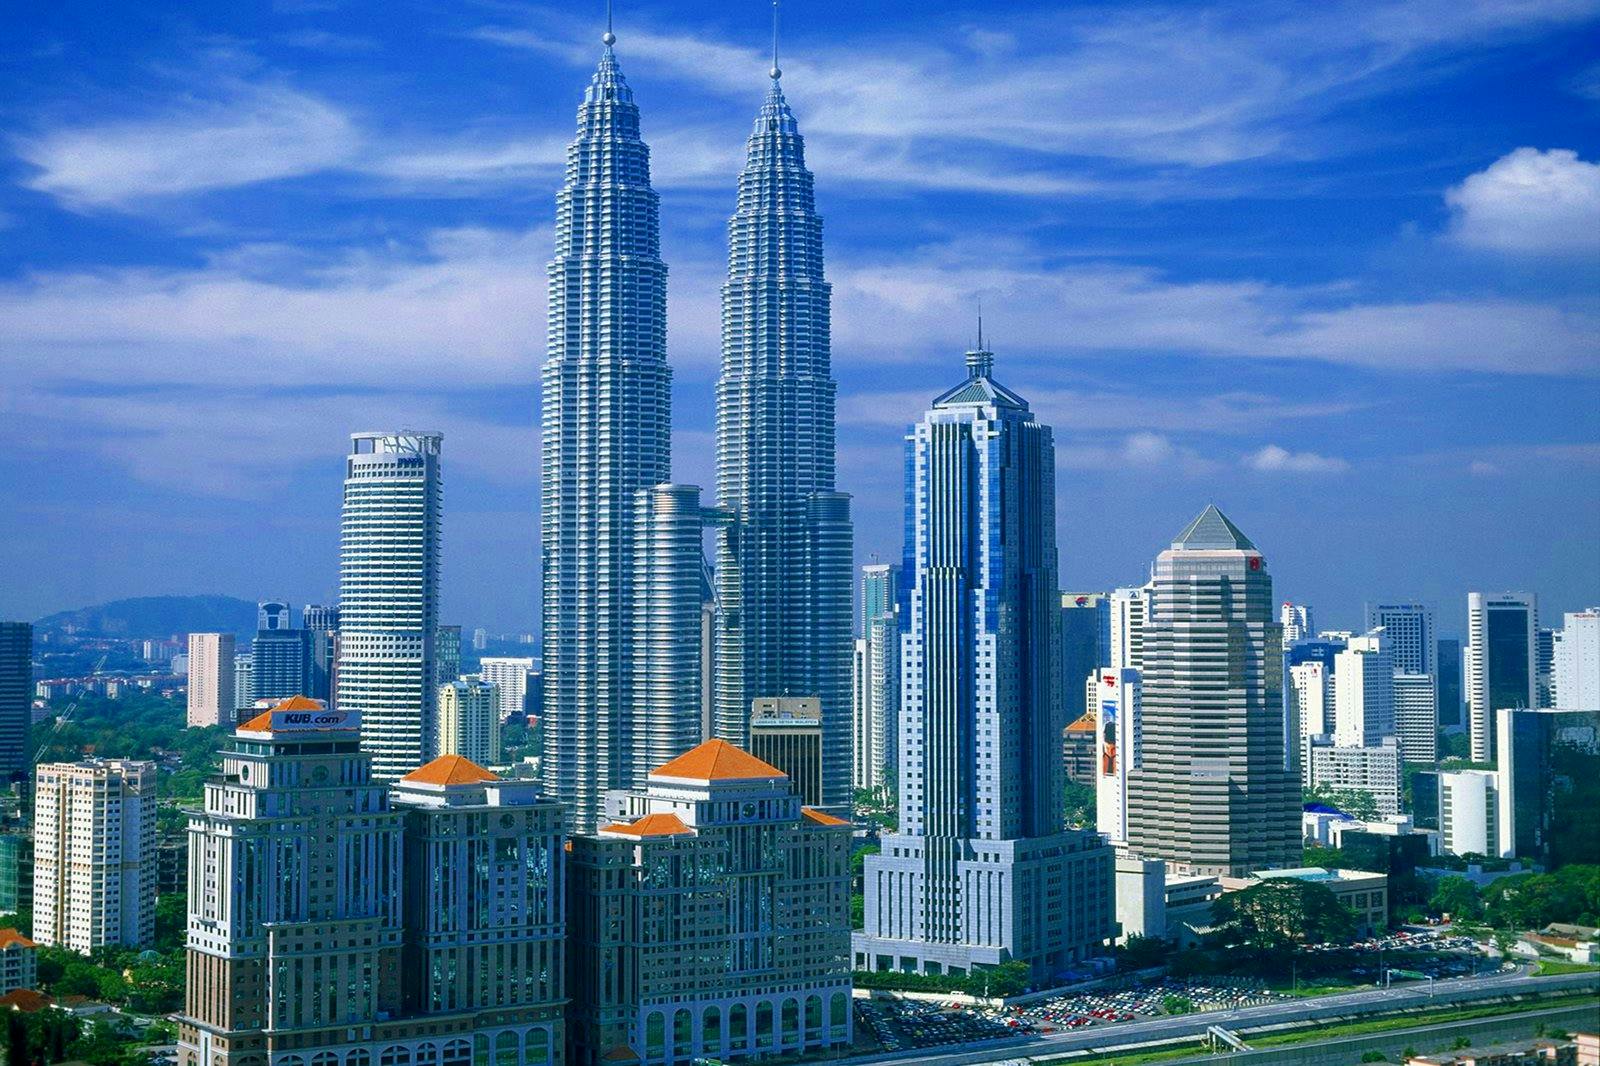 Port Klang (Kuala Lumpur), Malaysia Cruises - Excursions, Reviews